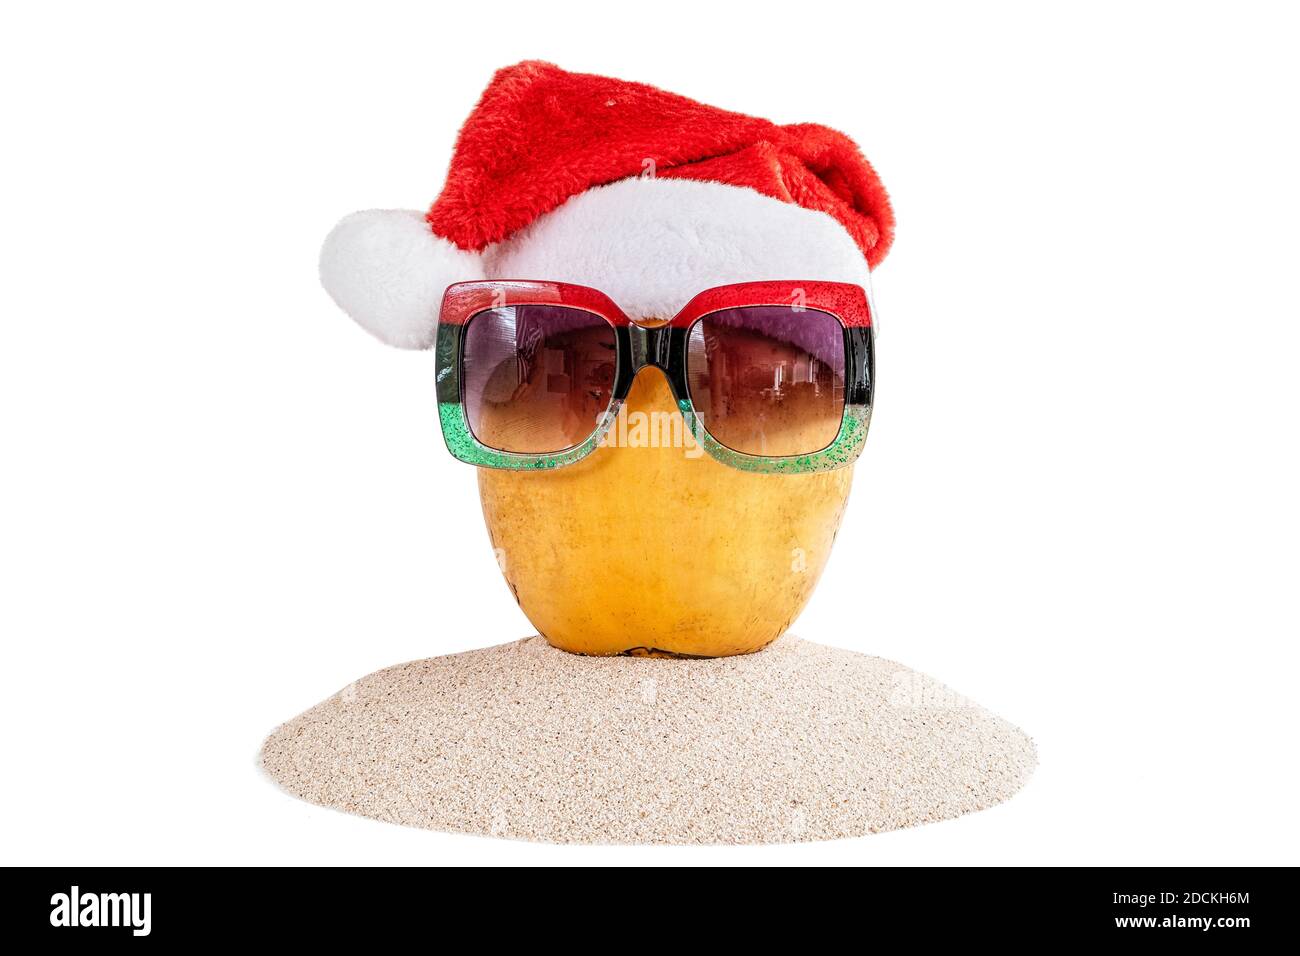 Frische gelbe Kokosnuss in einem roten Weihnachtsmütze mit roter und grüner Sonnenbrille, auf Sand. Stockfoto